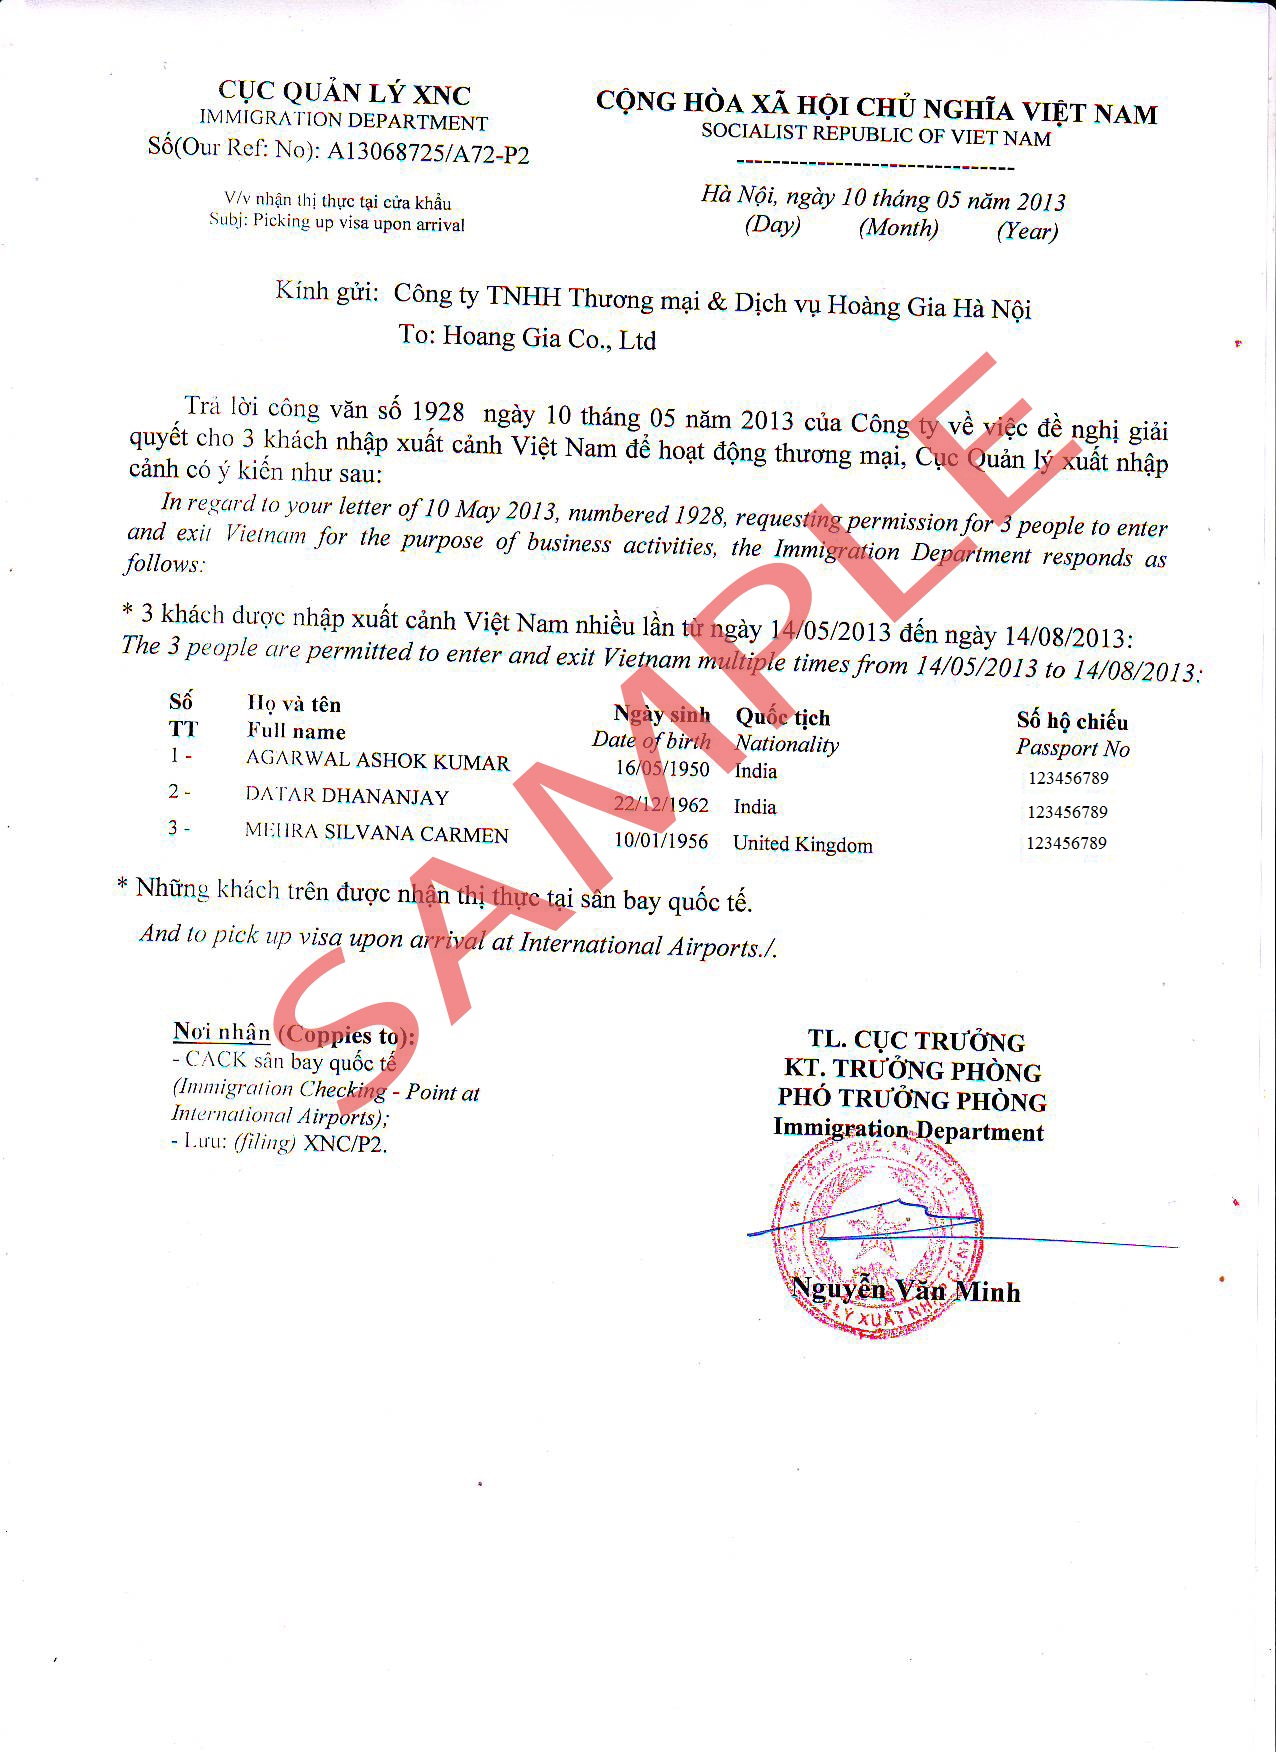 2. Vietnamesisches Visum-Genehmigungsschreiben